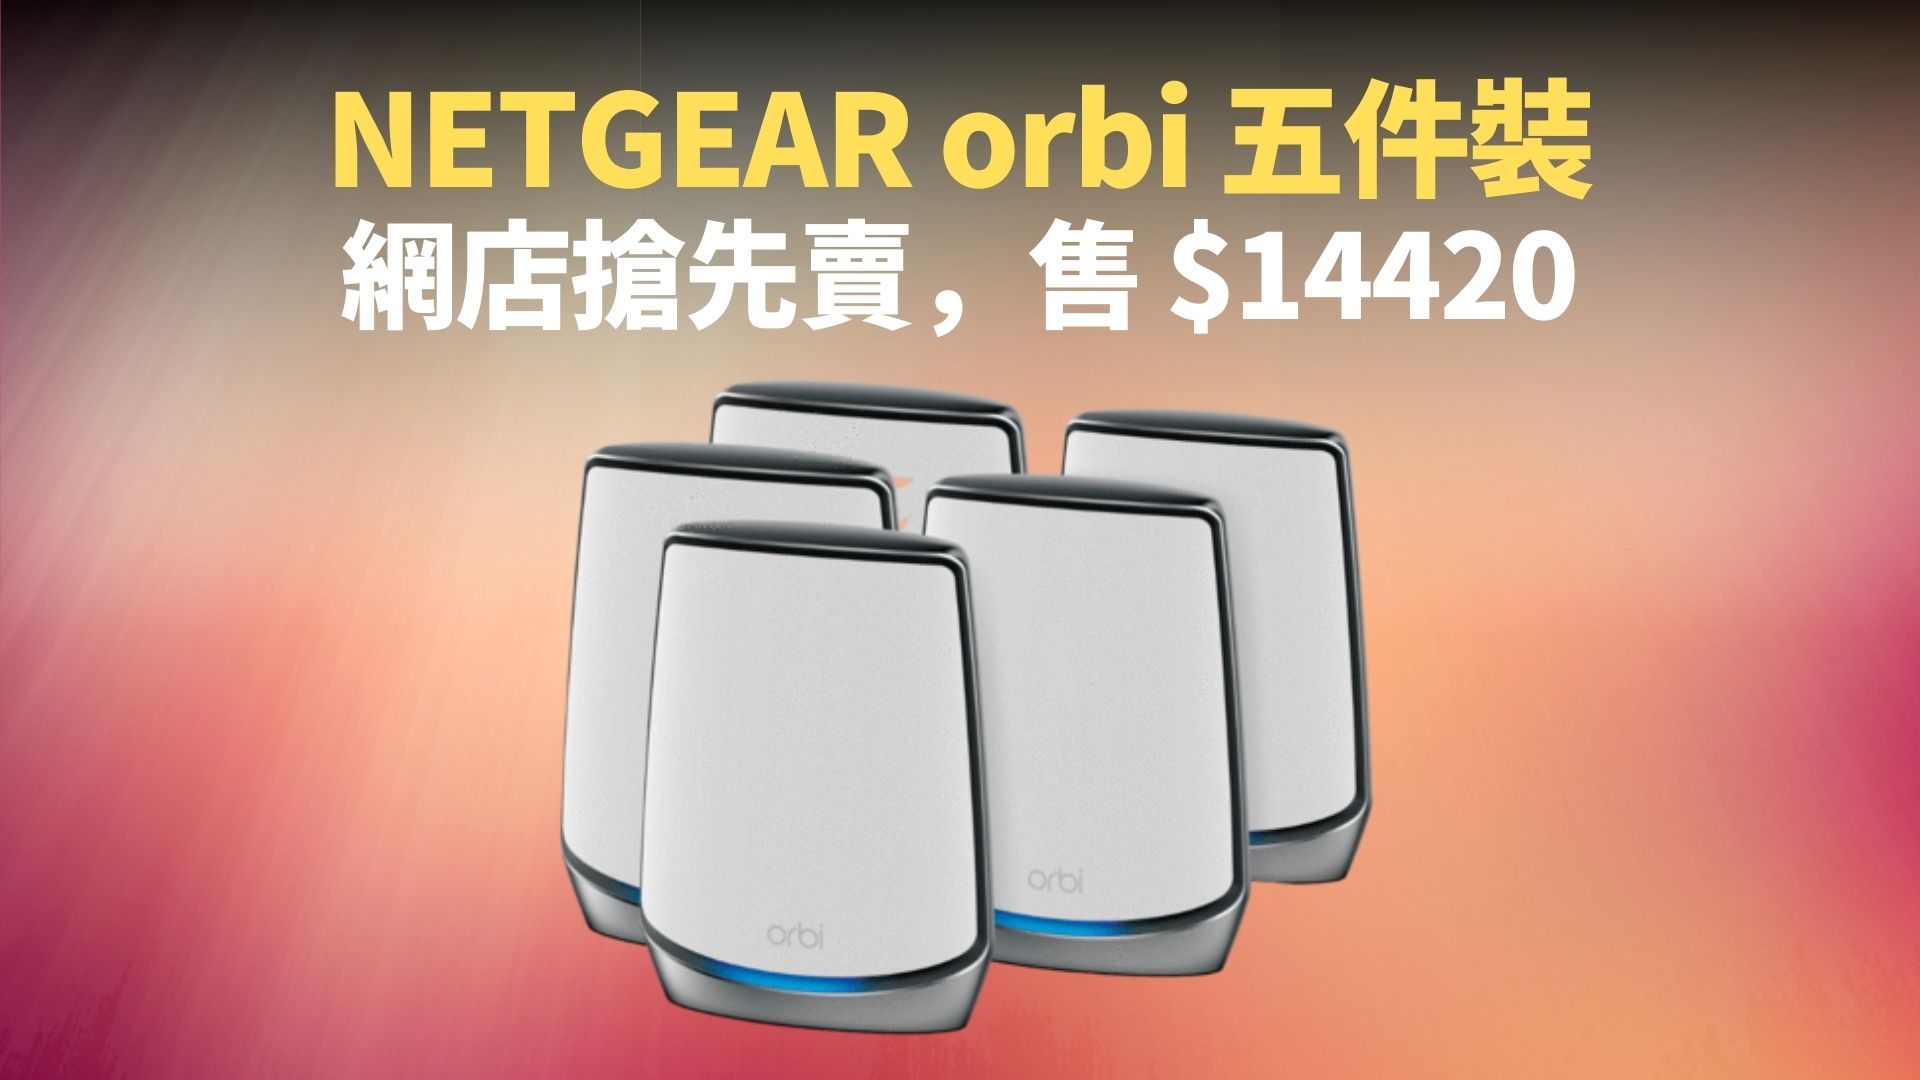 AX6000 配 WiFi6 及 5GHz，NETGEAR orbi RBK855 路由器香港推出：售價 $12490，官網免費送貨